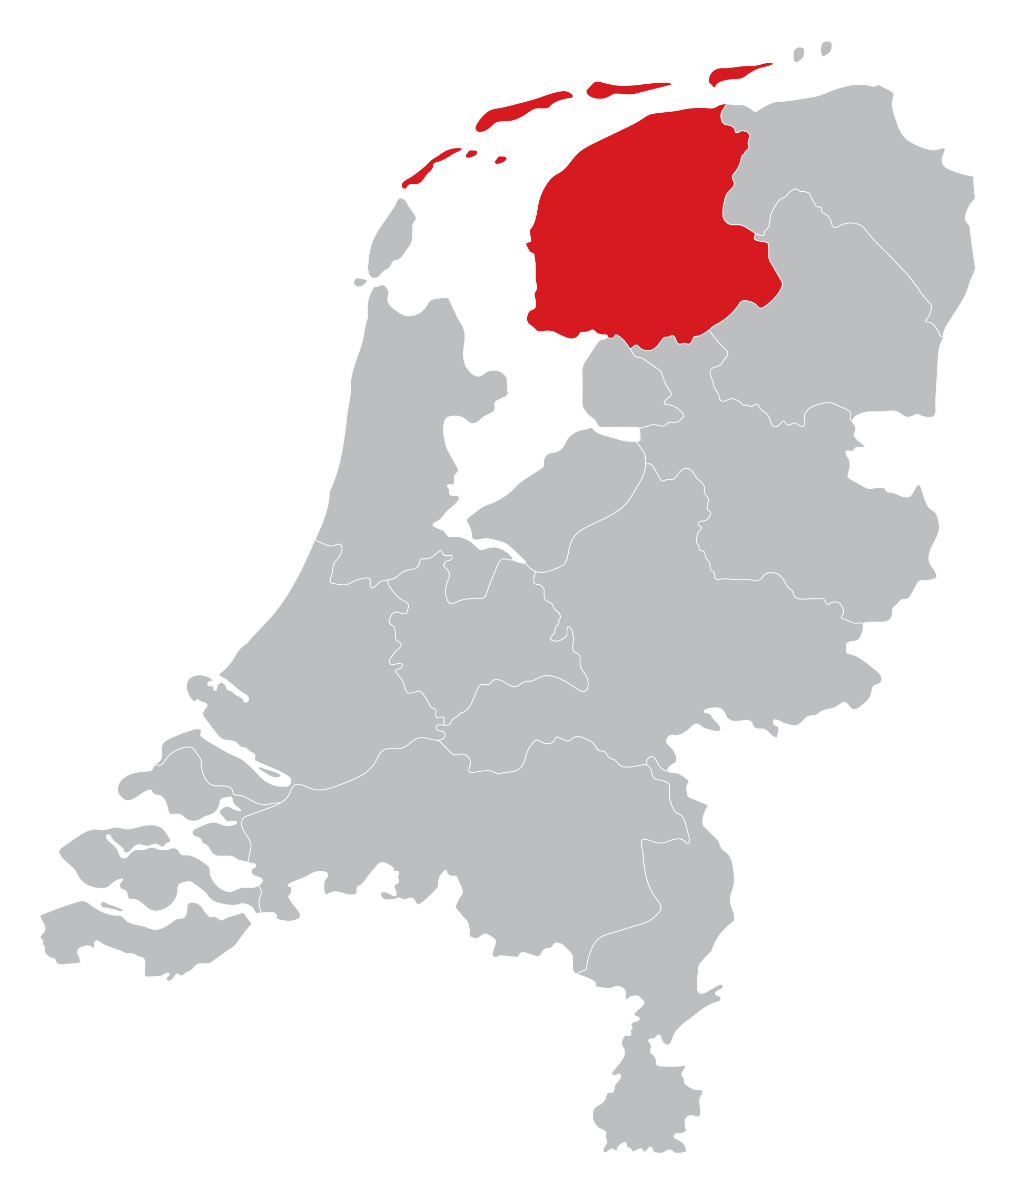 Dealers kaart in Friesland, Leeuwarden, Heerenveen, Drachten, Sneek, Harlingen of Dokkum